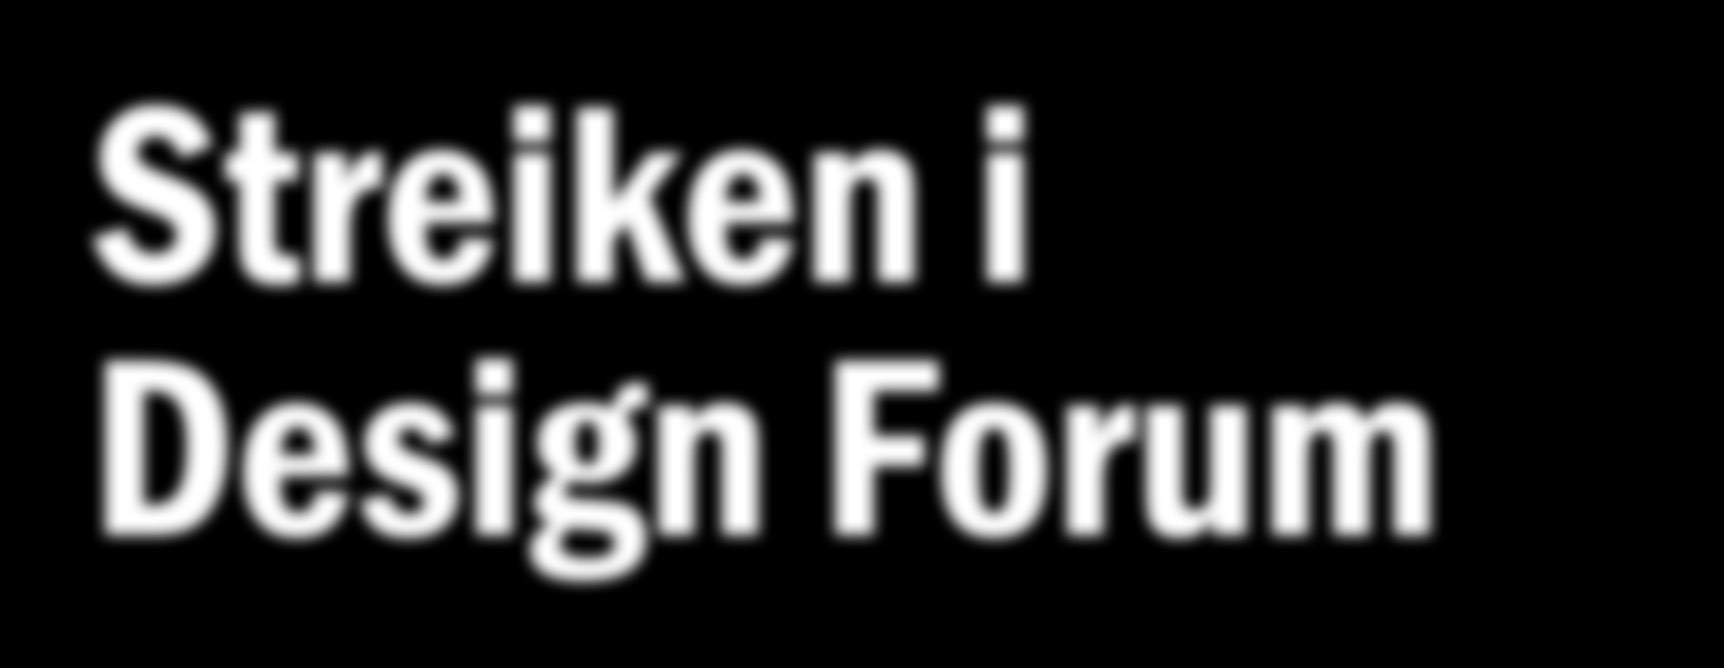 Kontor Streiken i Design Forum les mer på side 2 og se